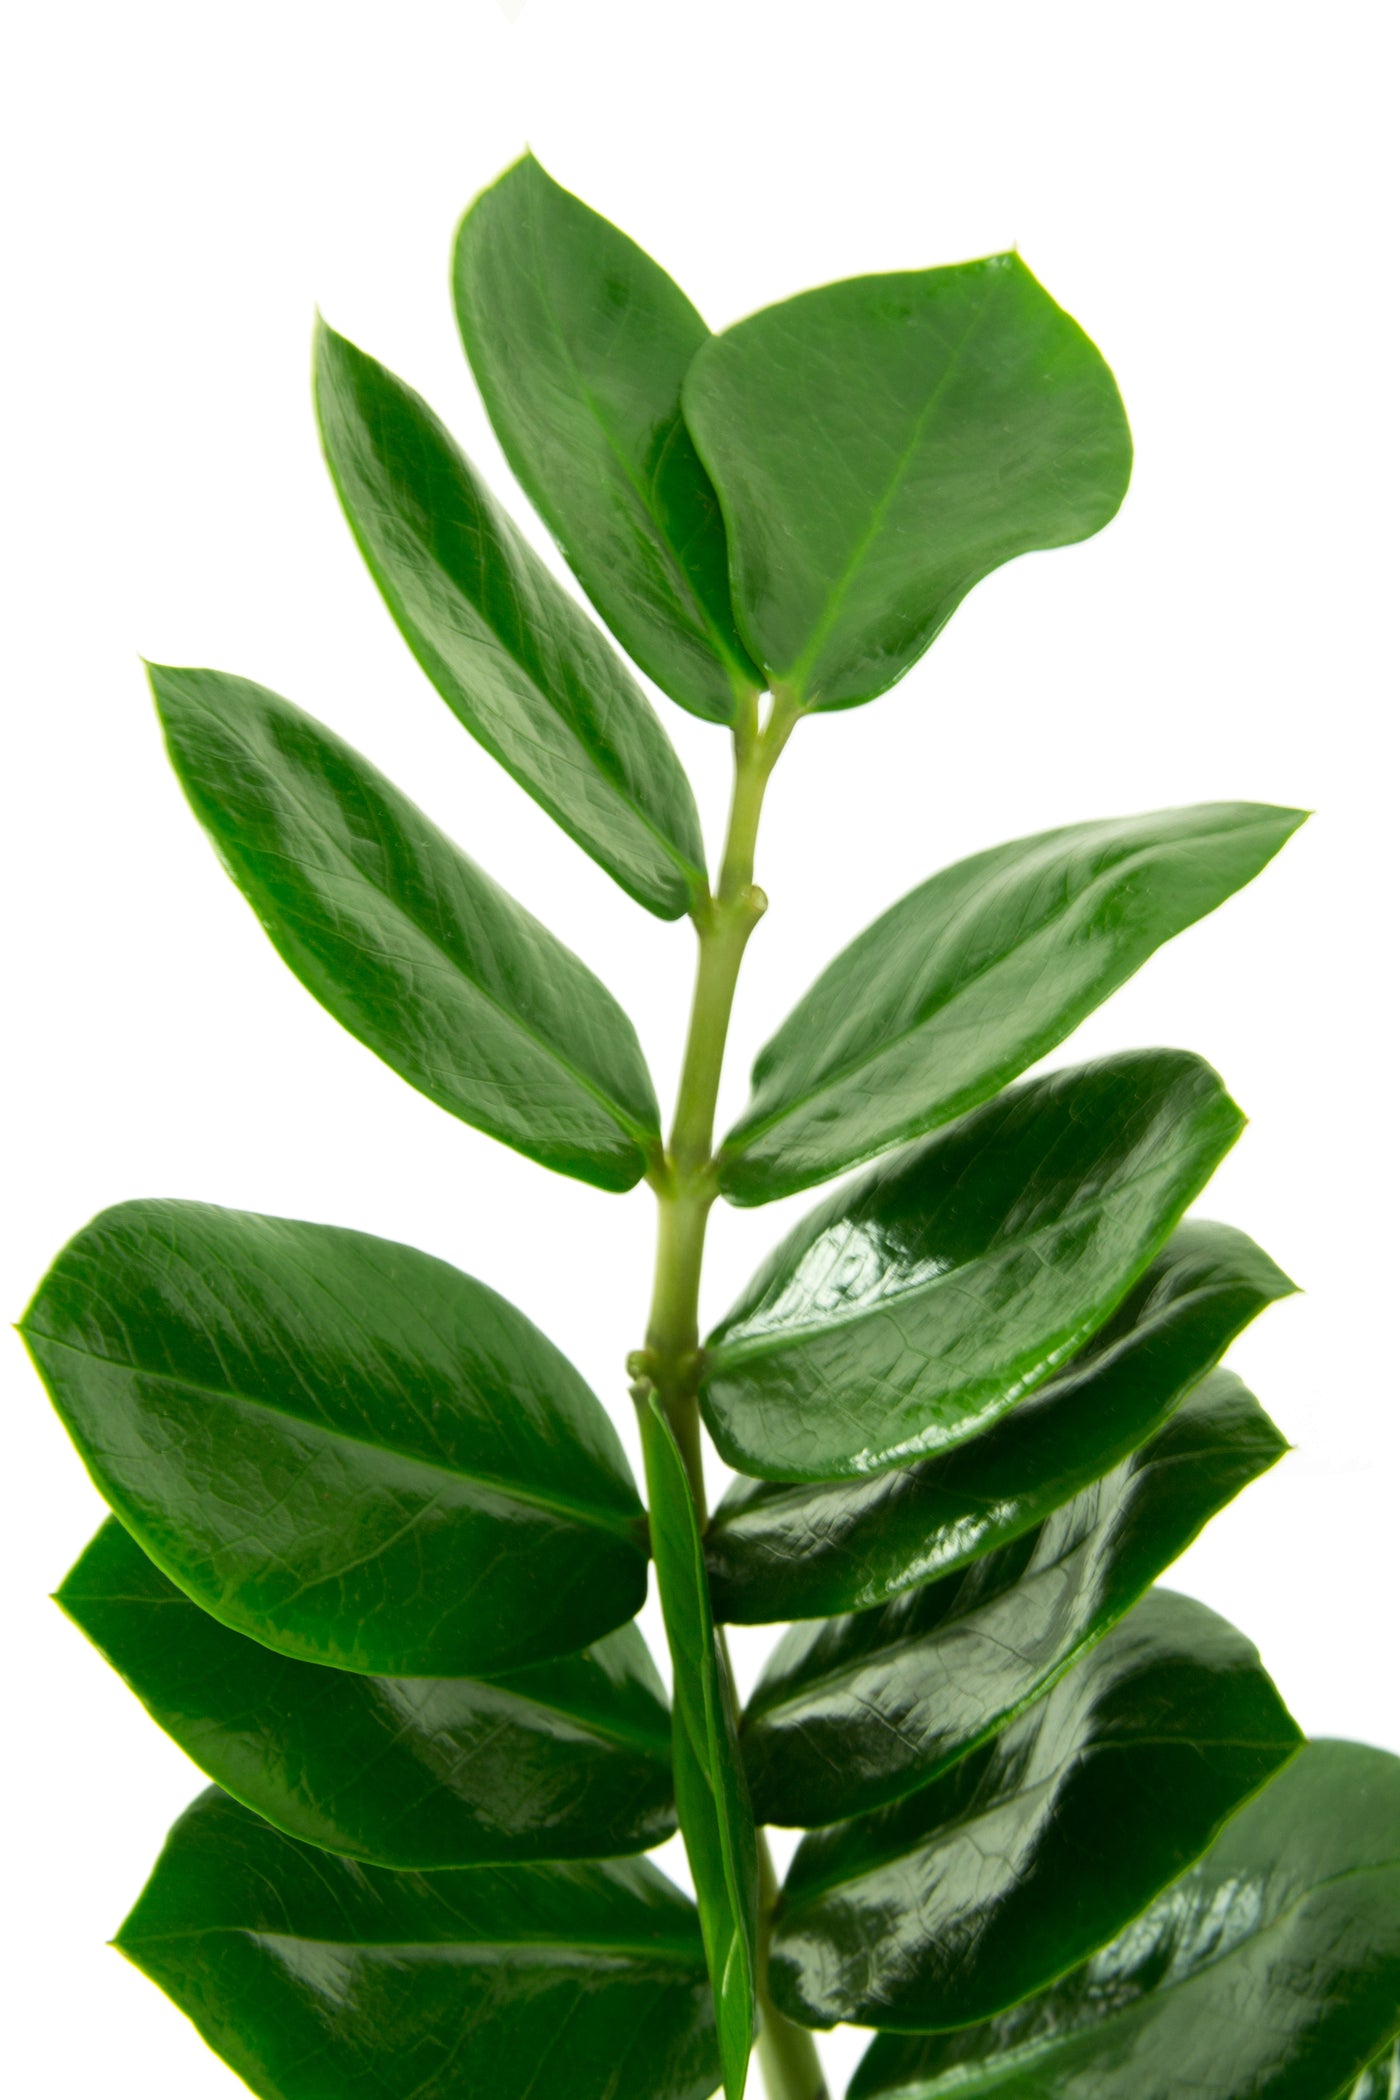 Zamioculcas zamiifolia D50xH100 cm